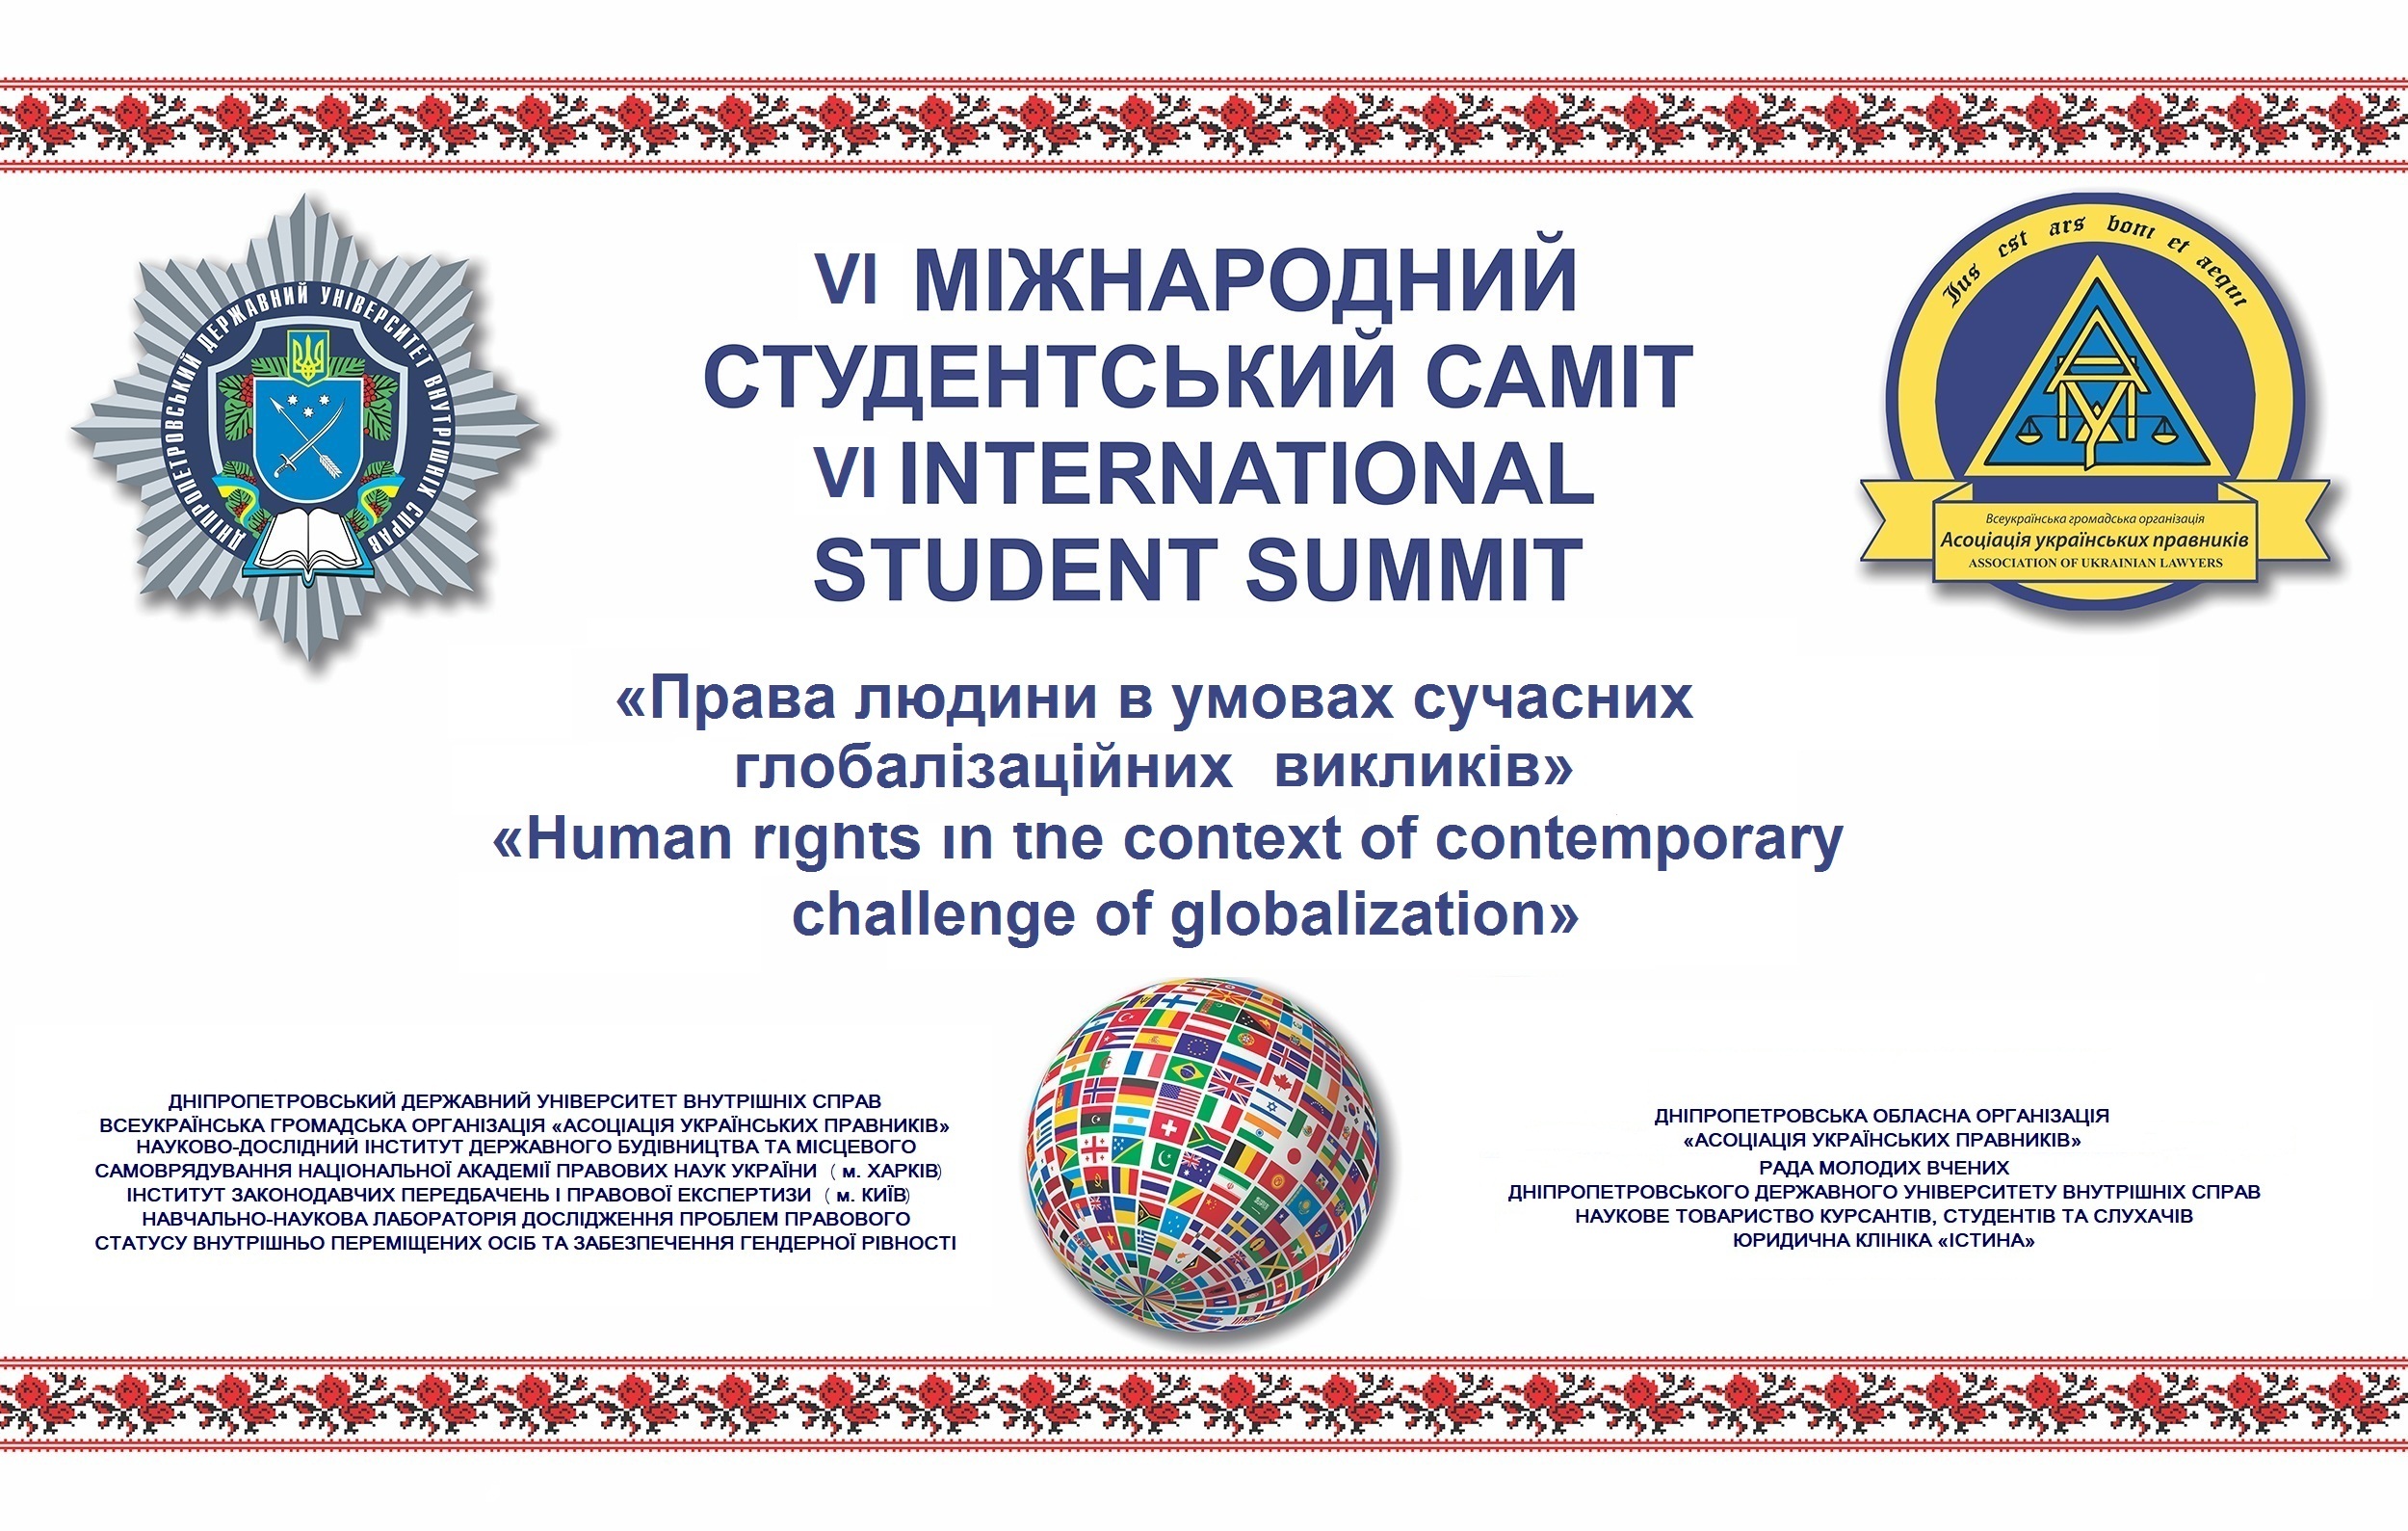 Переможців VI Міжнародного студентського саміту визначено! 